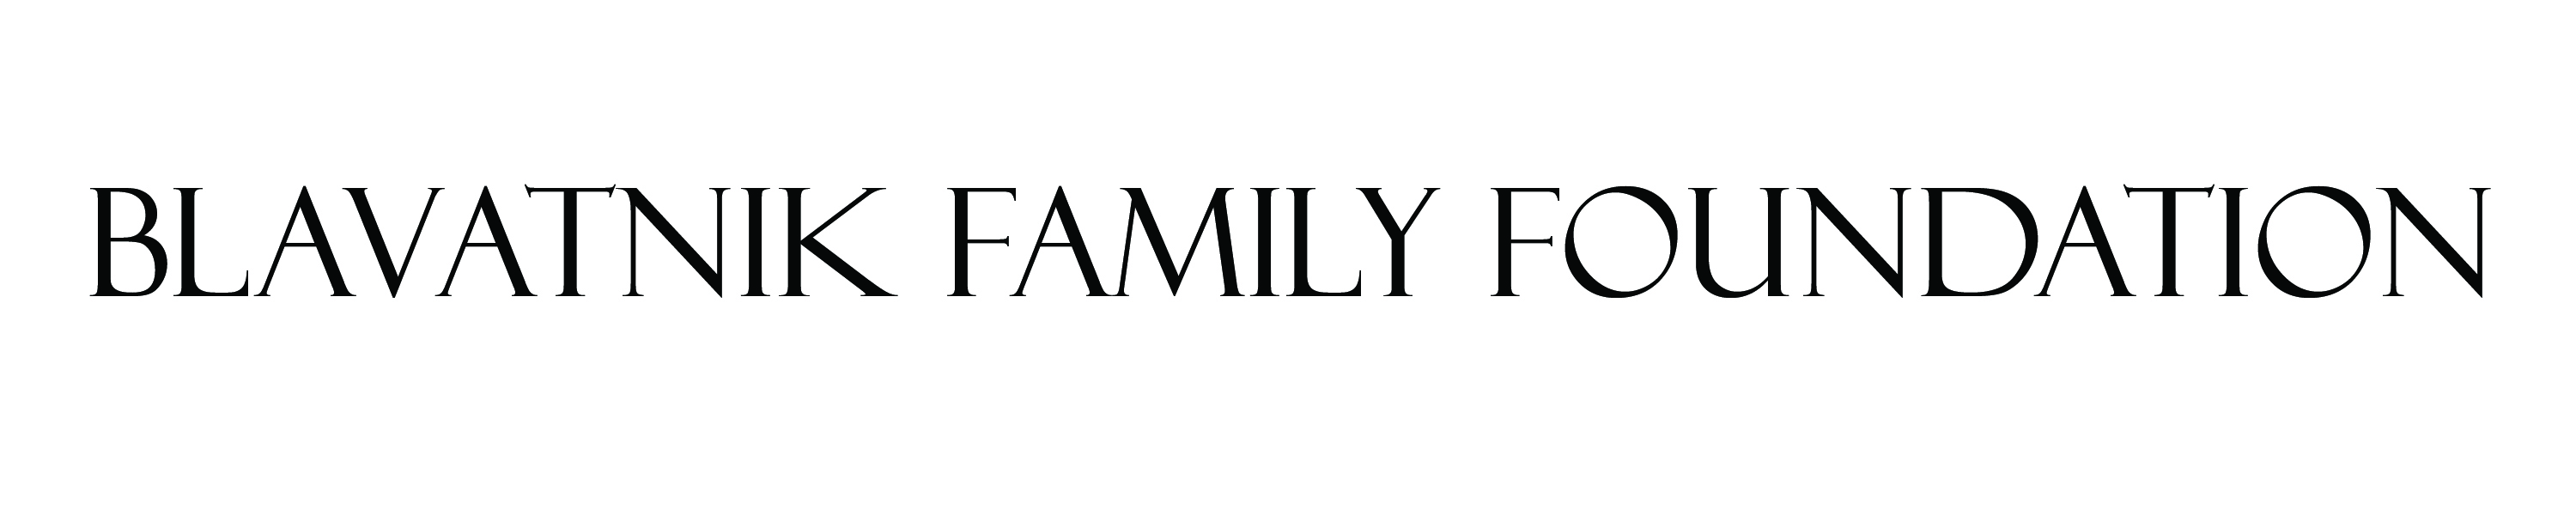 Blavatnik Family Foundation